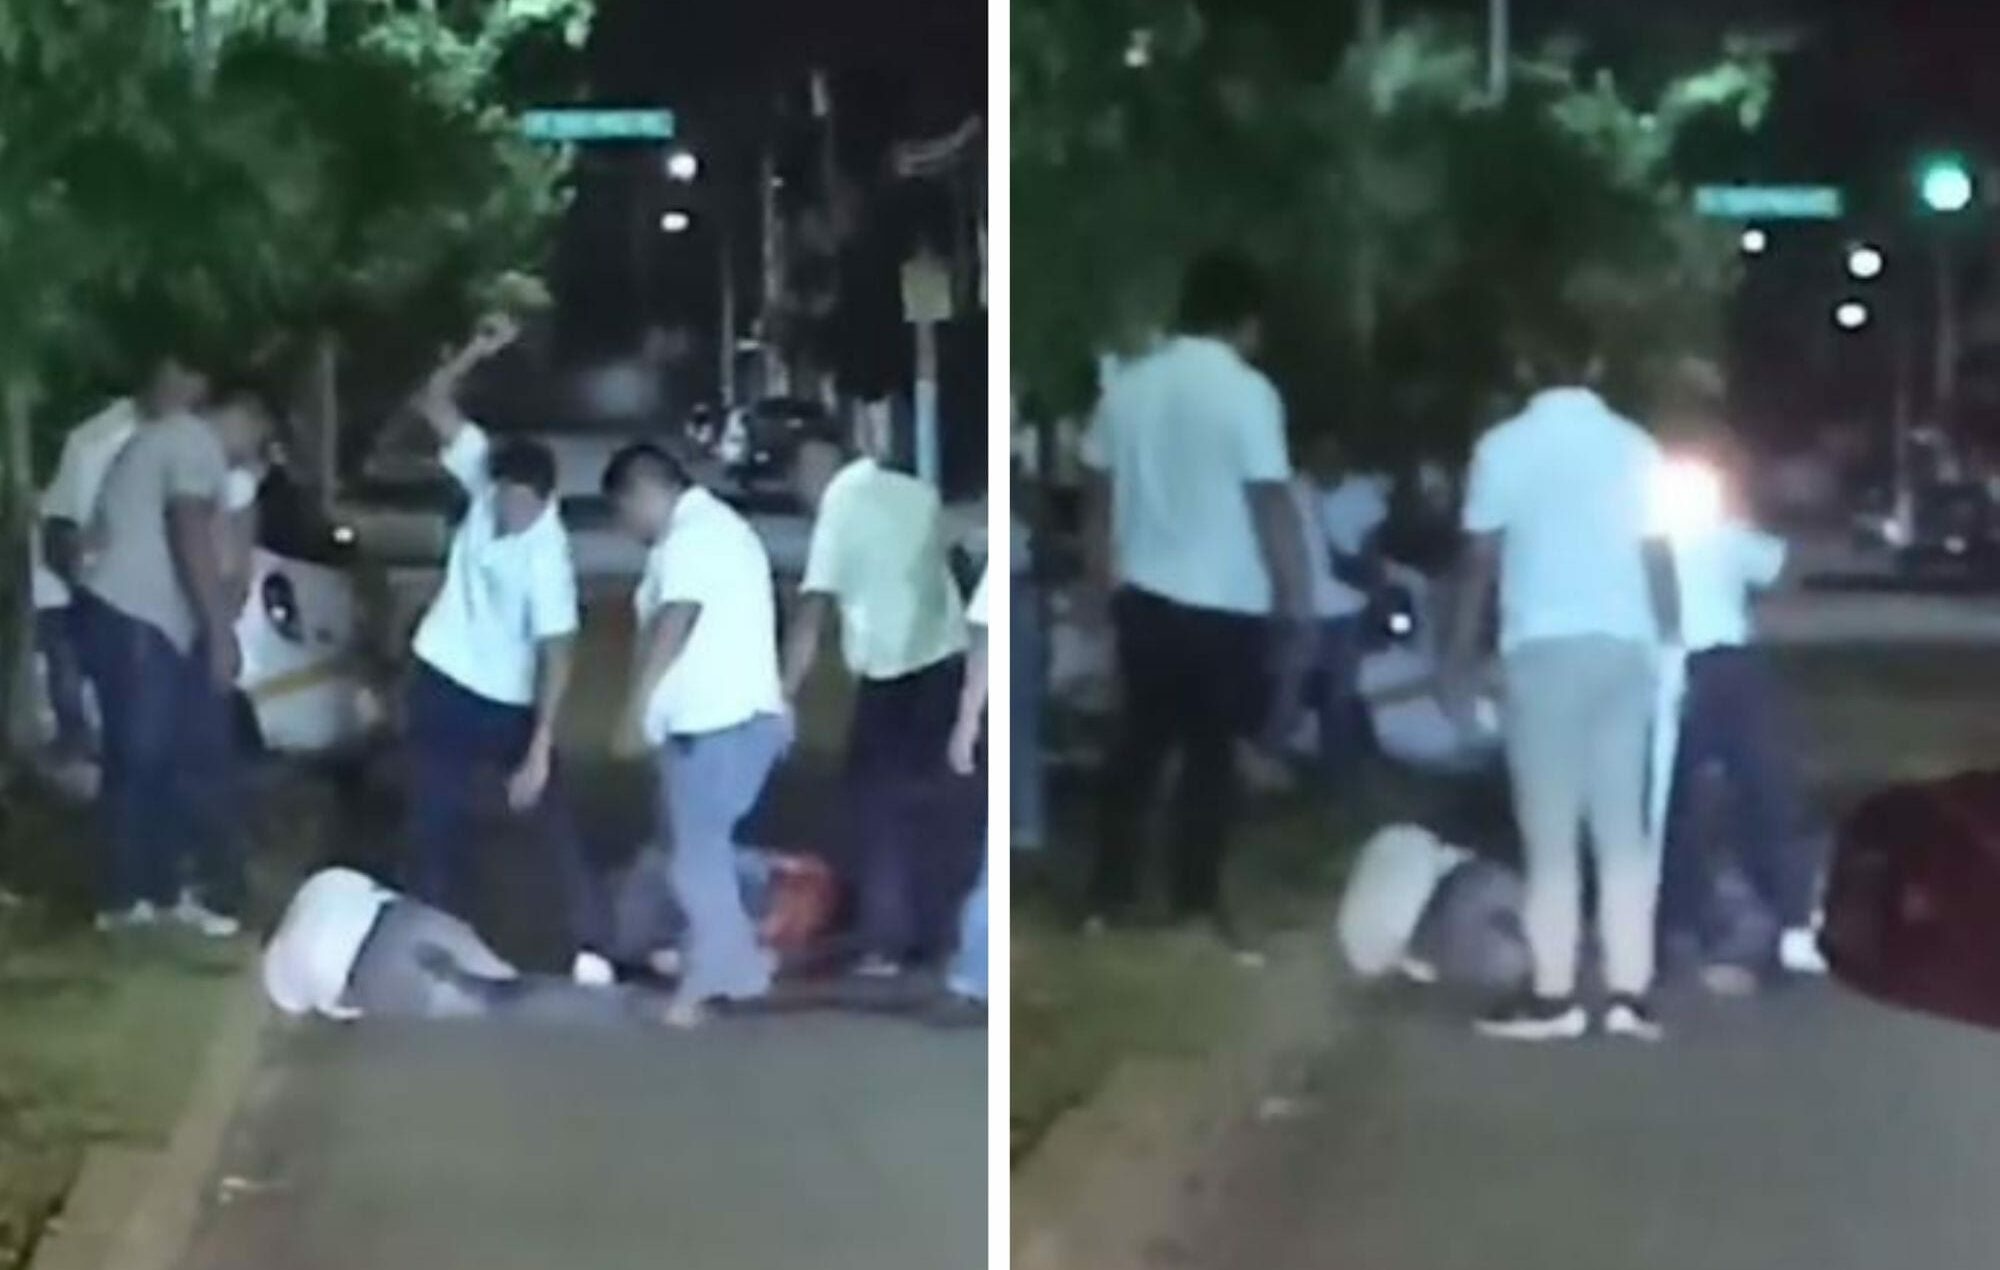 https://quintafuerza.mx/quintana-roo/chetumal/video-taxistas-golpean-a-dos-hombres-en-chetumal-presuntamente-atacaron-a-operador/